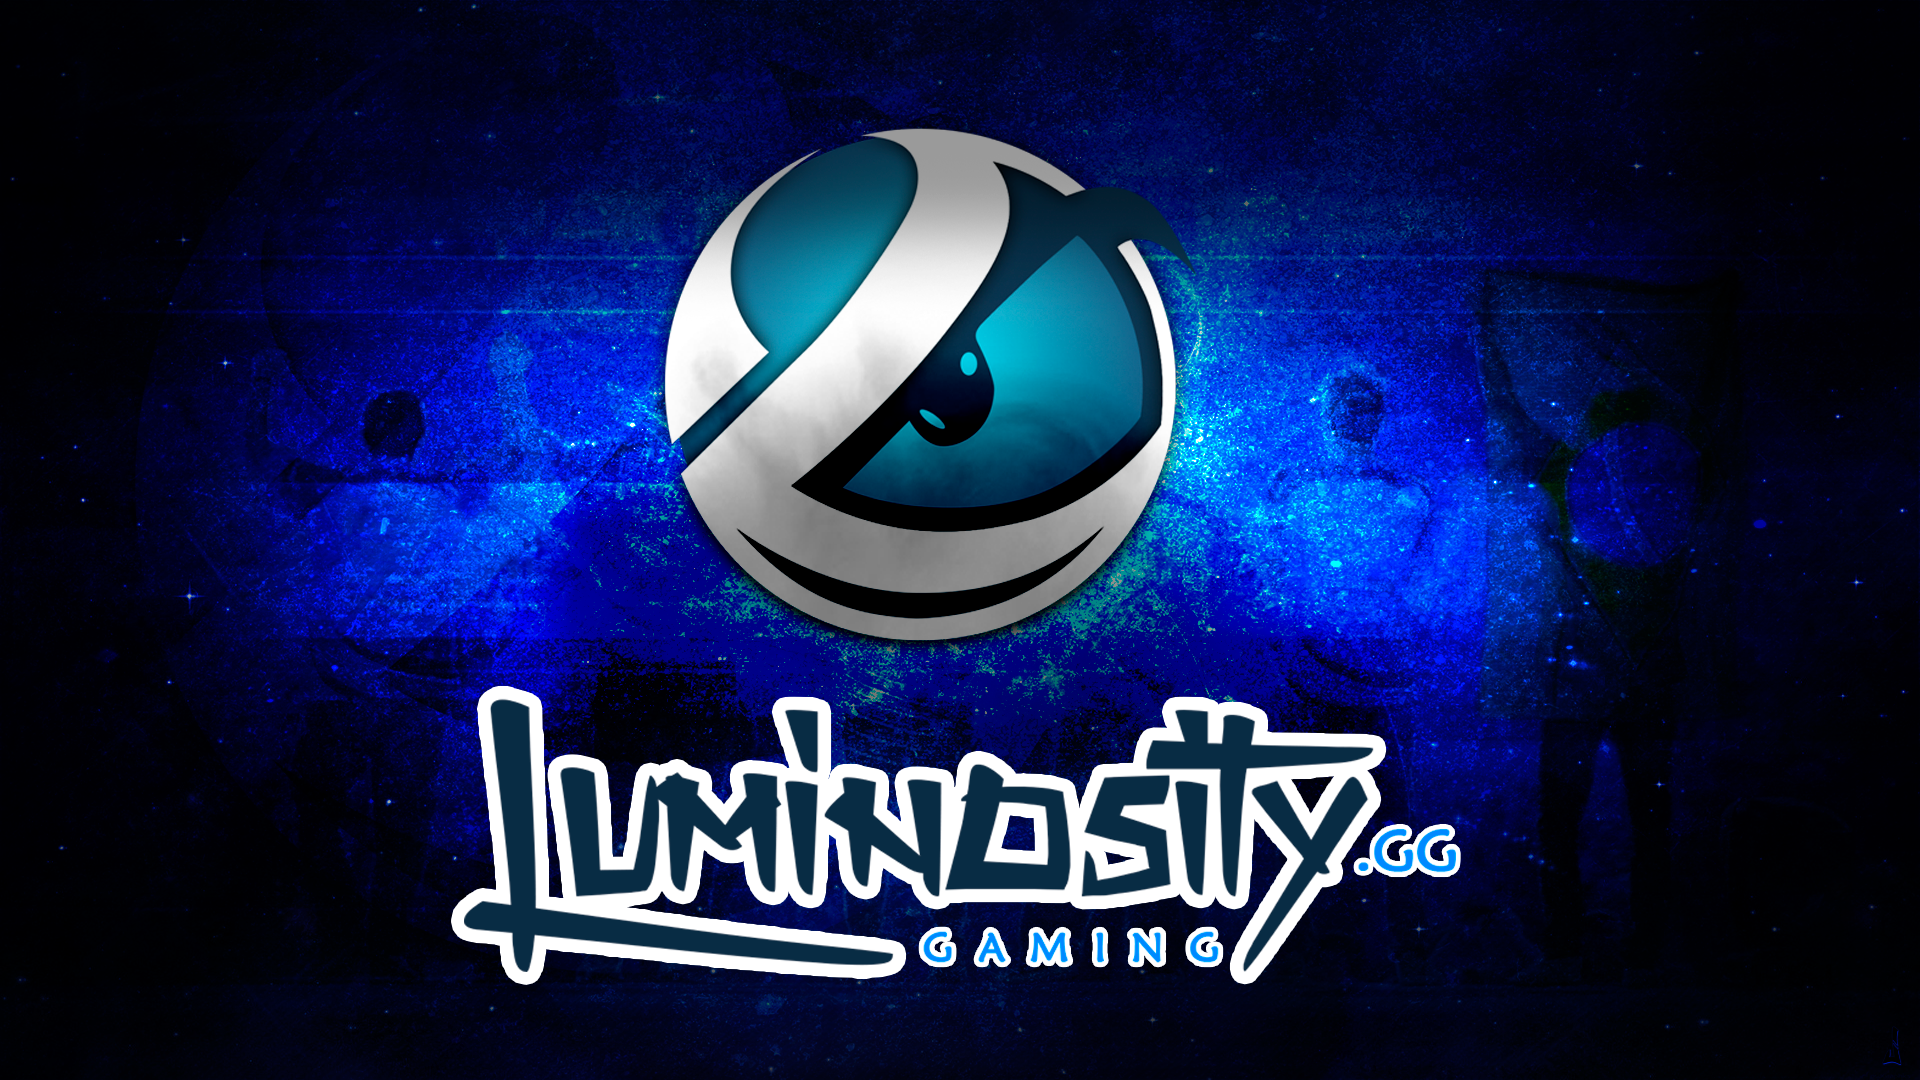 Luminosity Gaming. CS:GO Wallpaper. Luminosity gaming, Gaming wallpaper, Logo concept